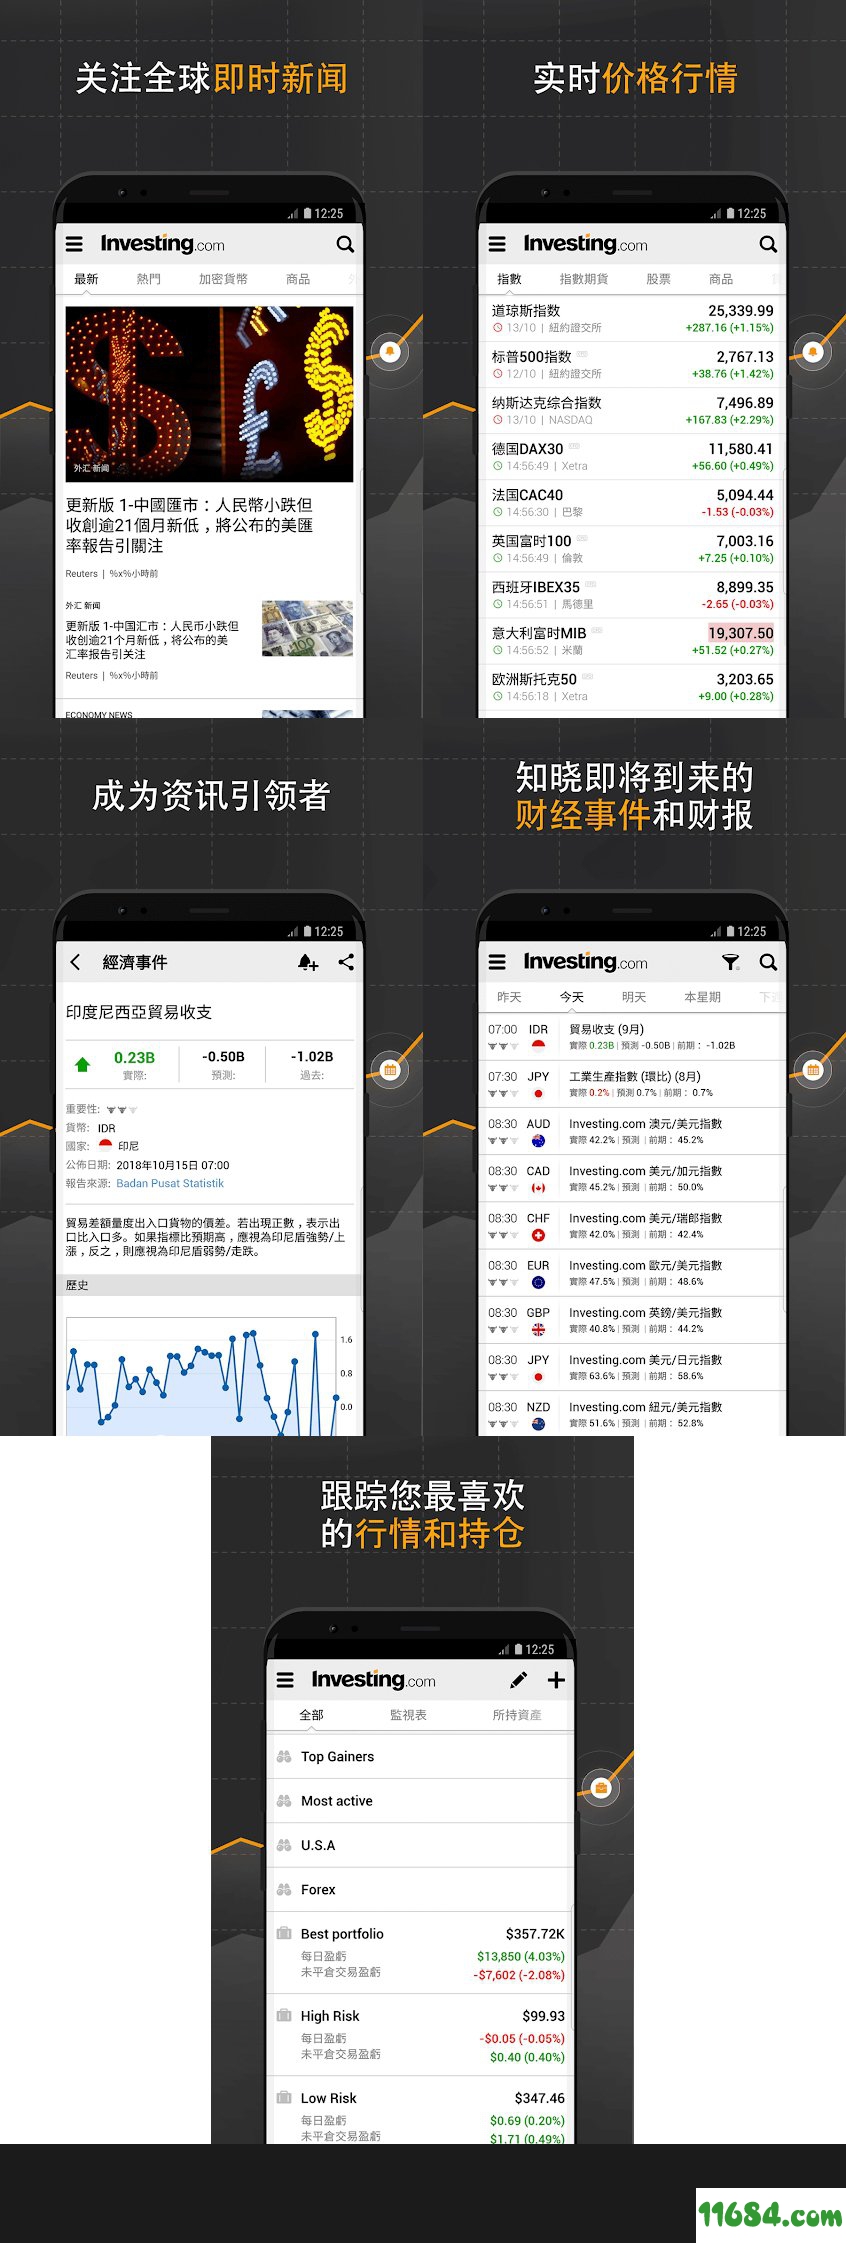 外汇股票资讯通 v4.7.1 直装/高级/中文安卓版下载